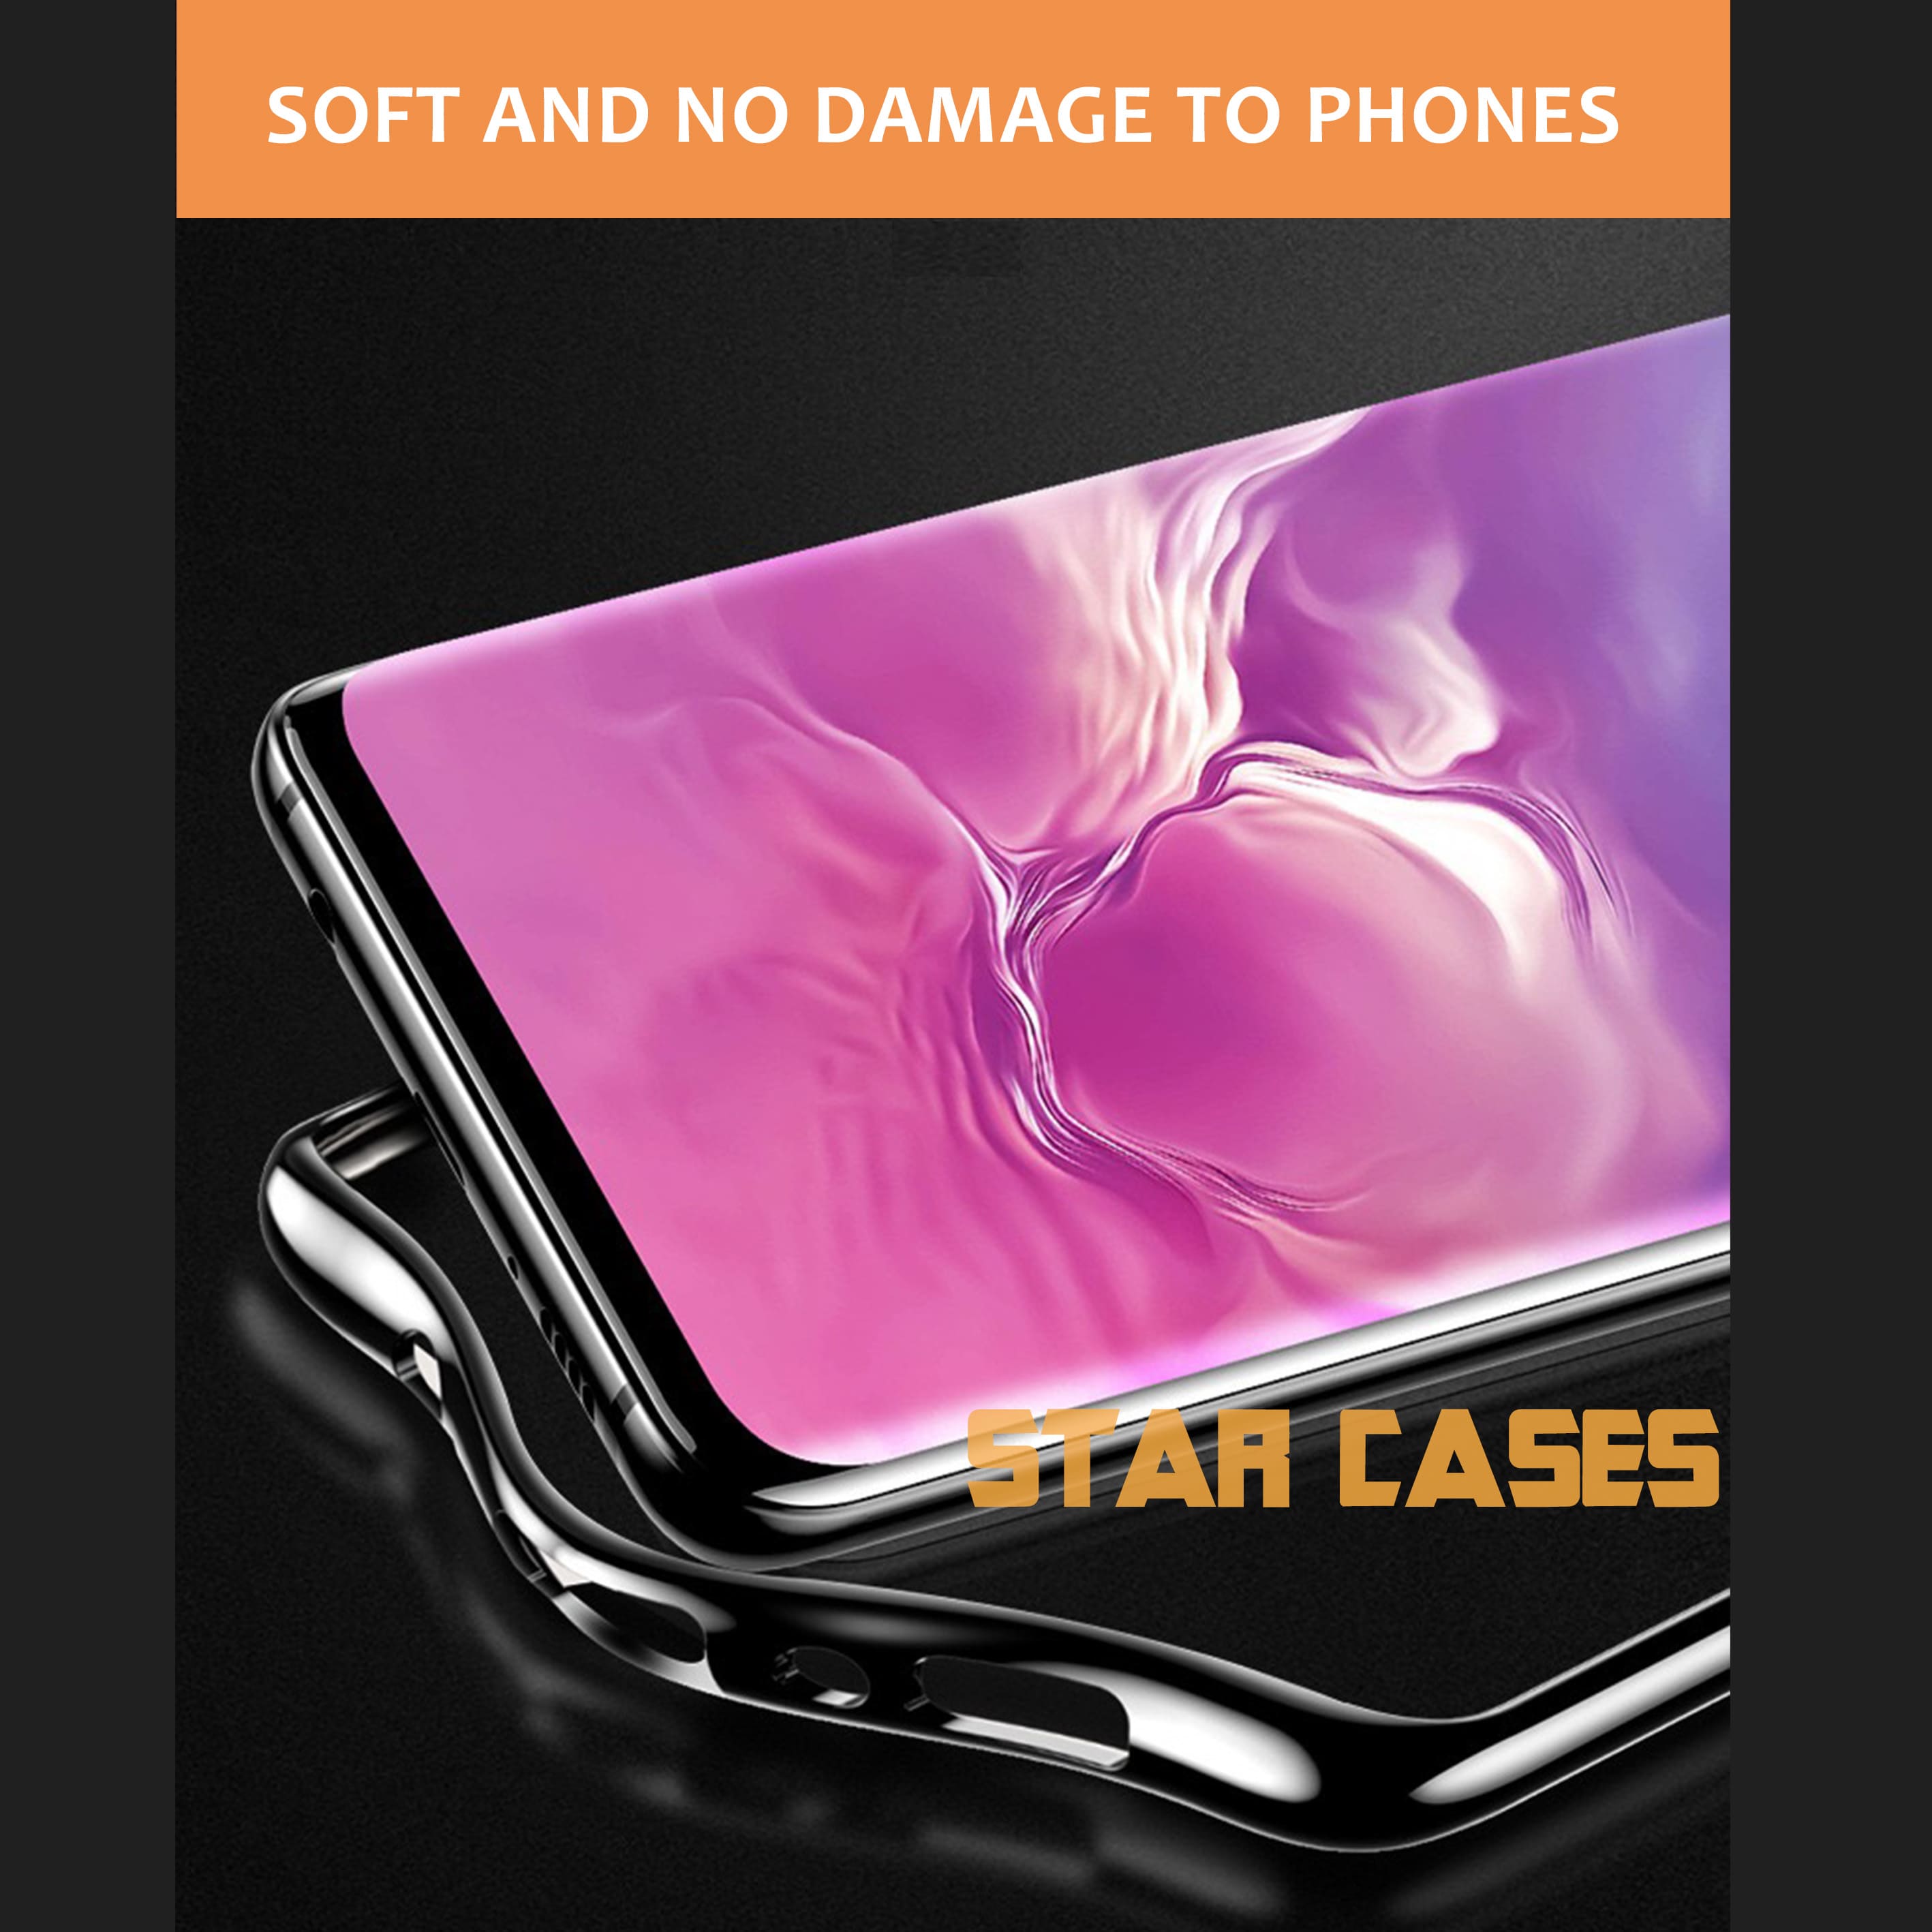 Samsung S10e Premium Slim Soft Case